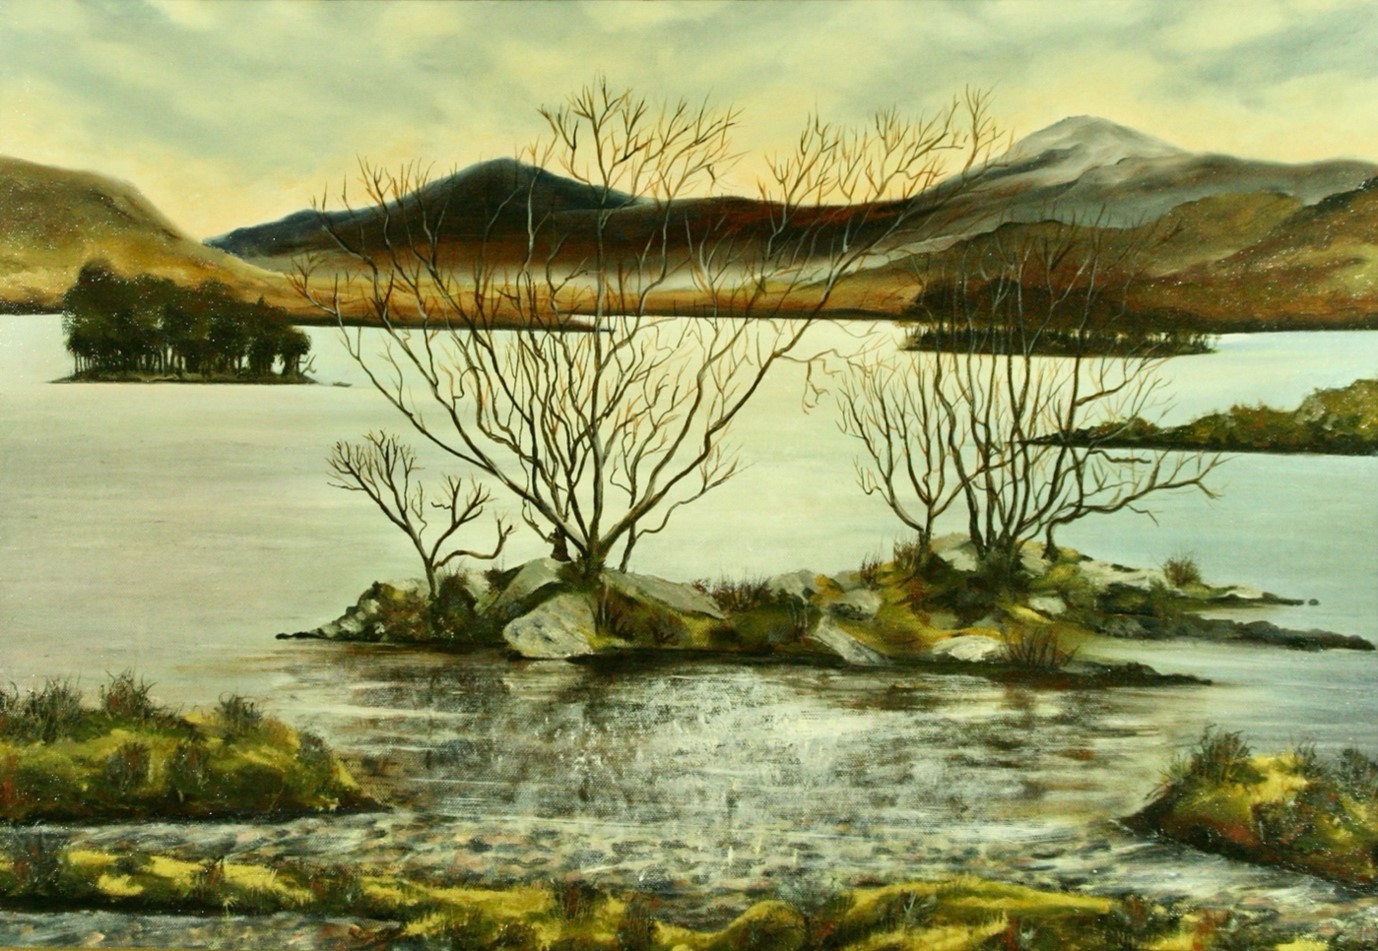 Loch Awe 2